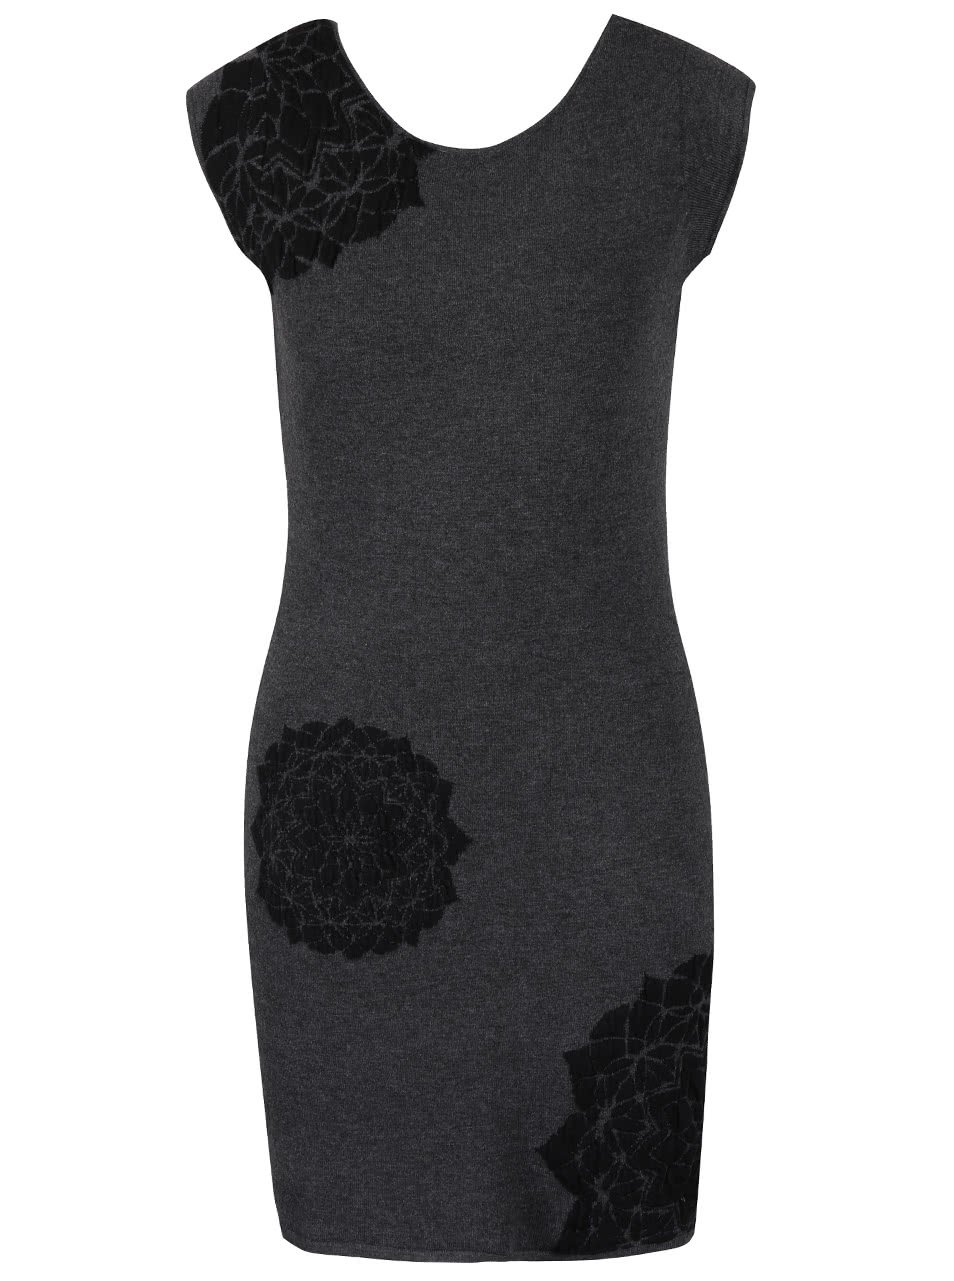 Tmavě šedé svetrové šaty s černými ornamenty Desigual Coral